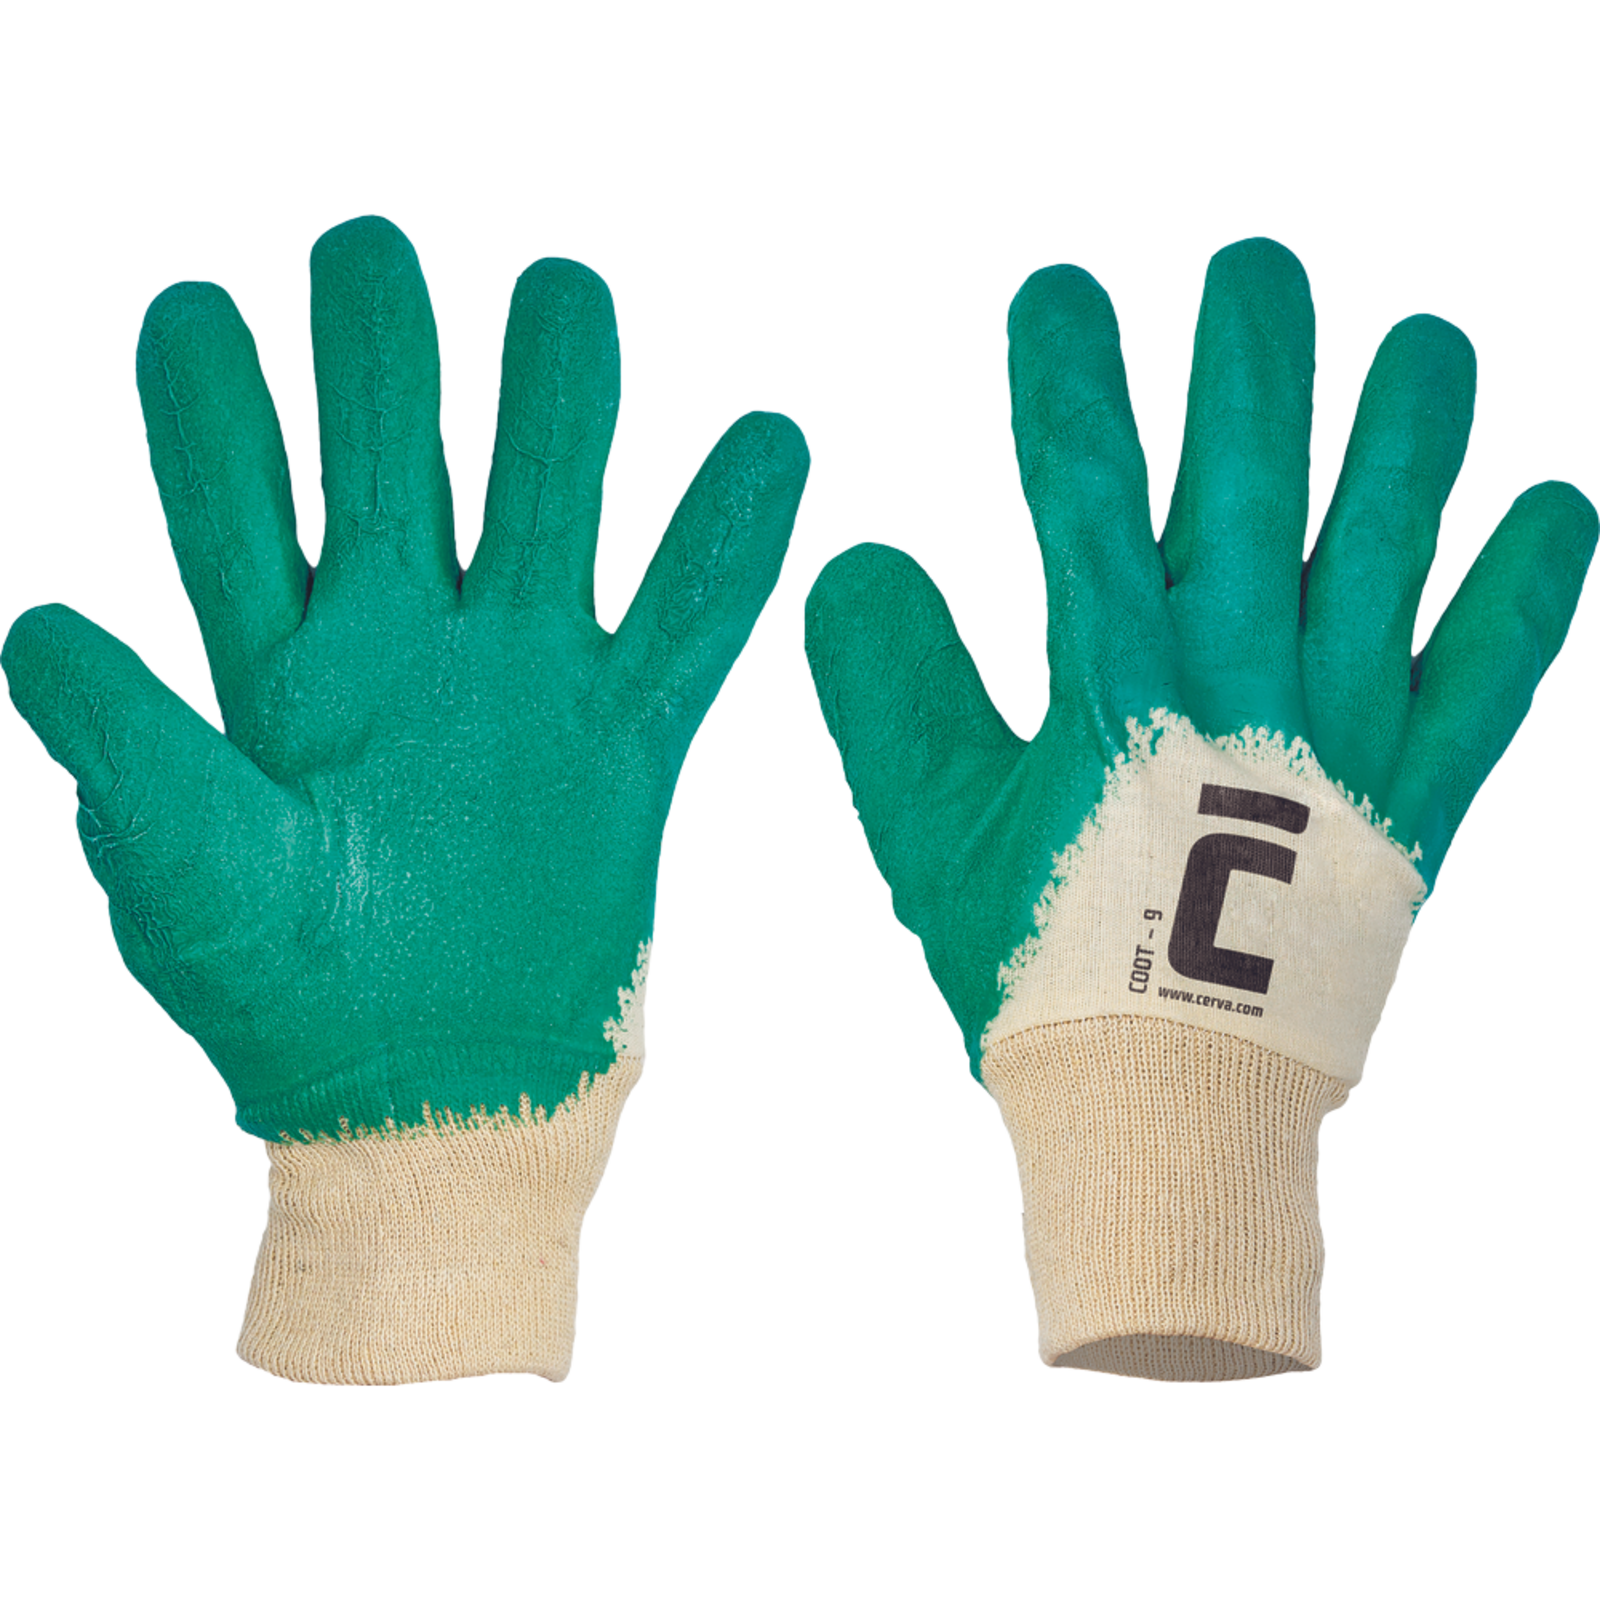 Pracovné rukavice Cerva Coot, mechanické - univerzálne, máčané latex - veľkosť: 8/M, farba: zelená/biela